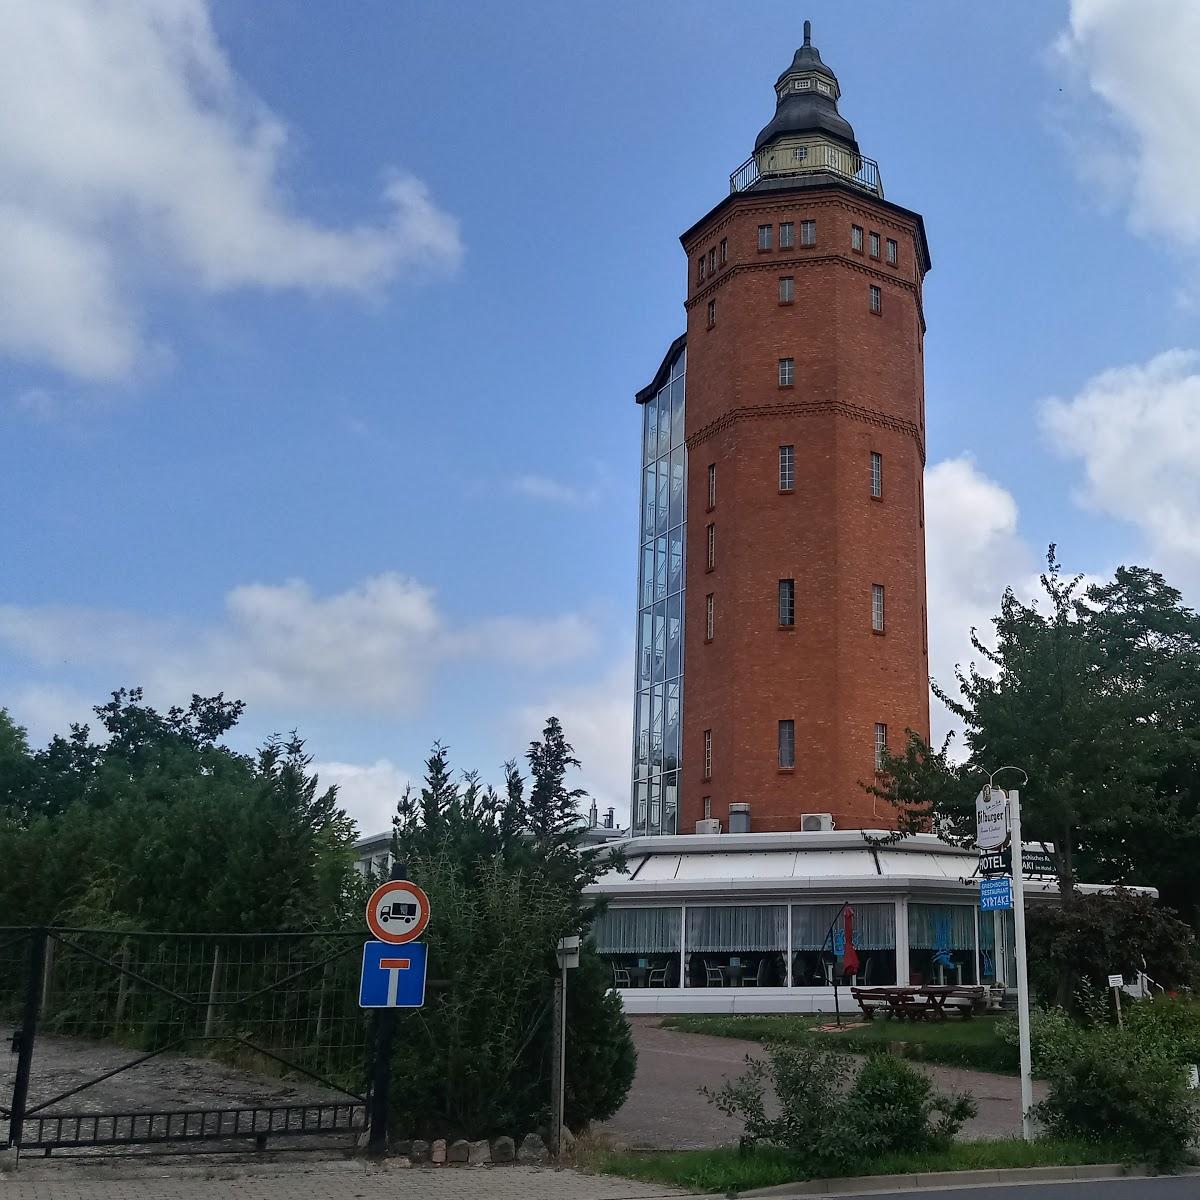 Restaurant "Hotel Wasserturm" in Strasburg (Uckermark)